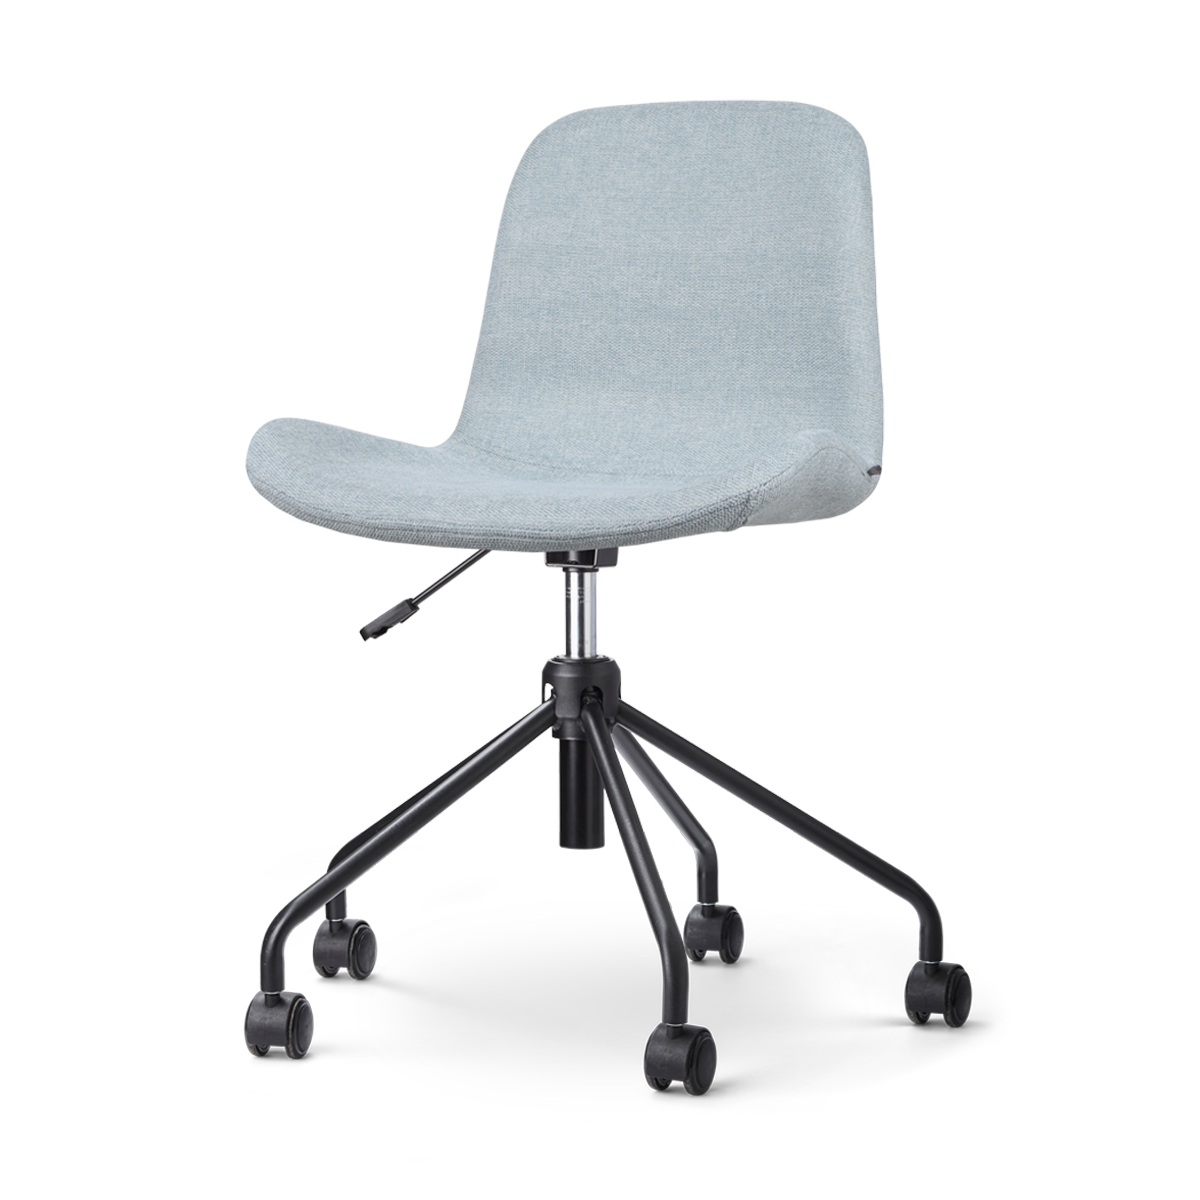 Nout-Fé bureaustoel lichtblauw - zwart onderstel